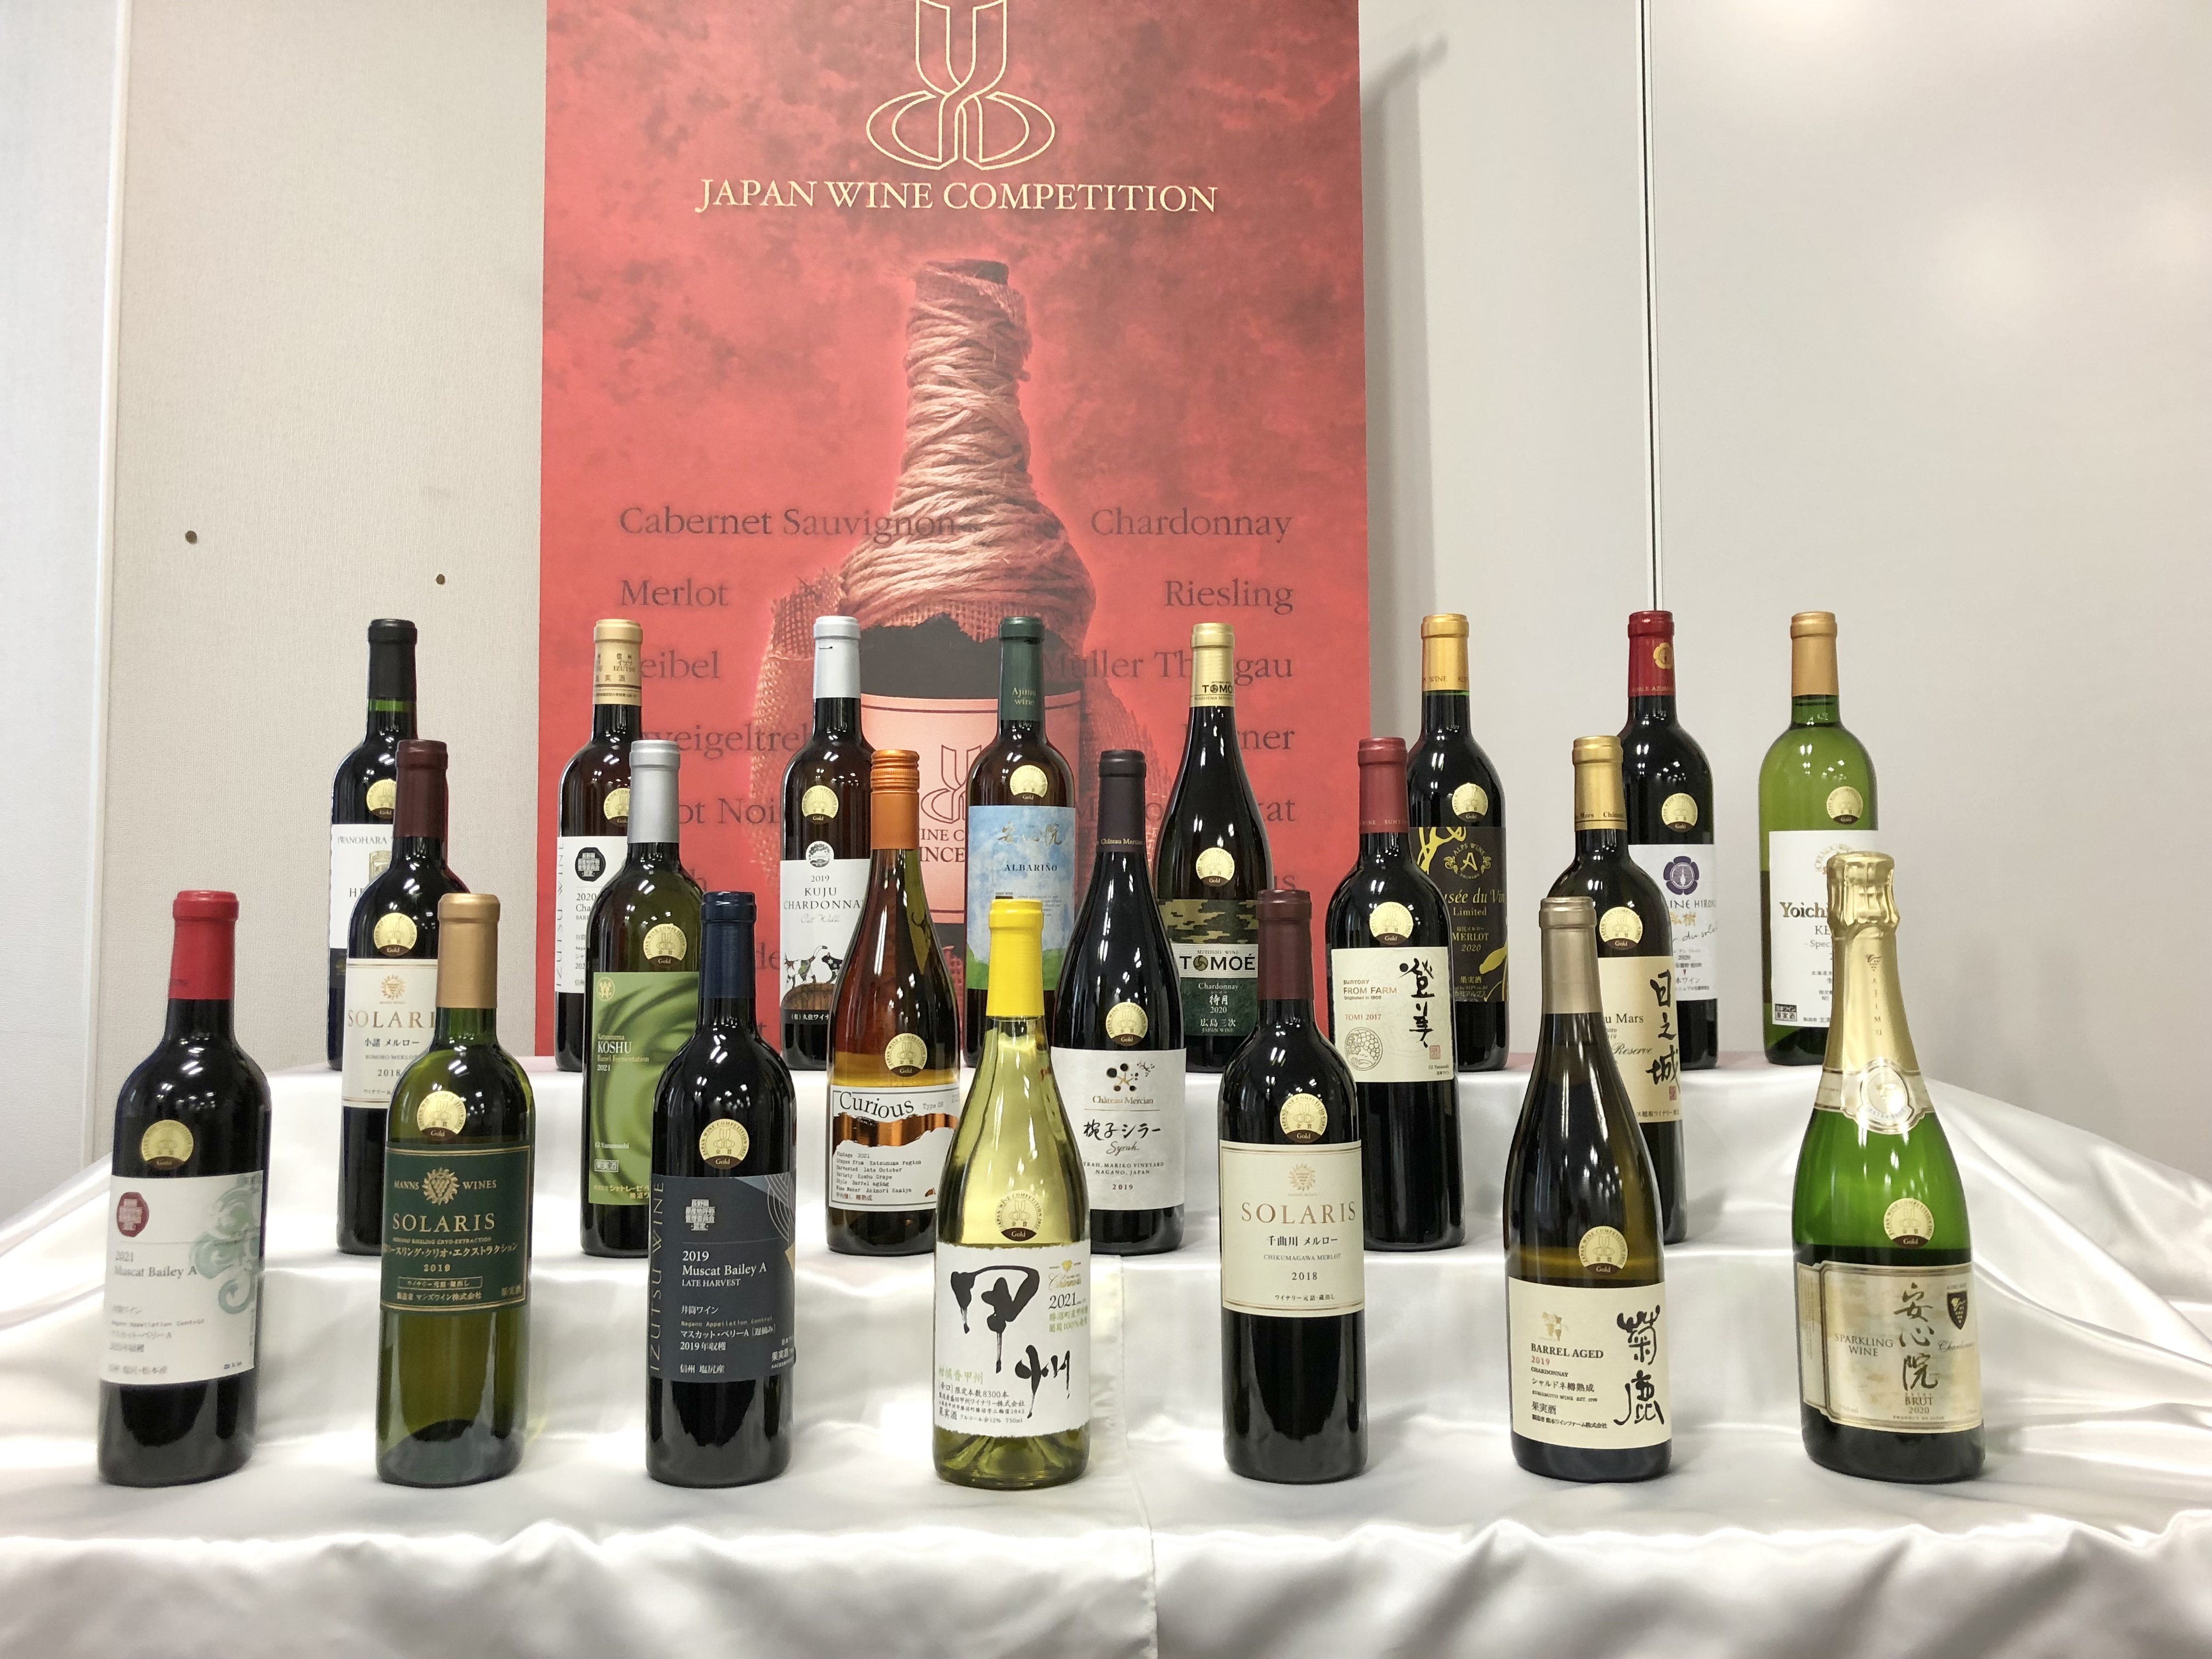 3年ぶりの開催となった「日本ワインコンクール2022」　
金賞に輝いた24銘柄と審査結果を発表！
過去最多の全国108ワイナリーが参加